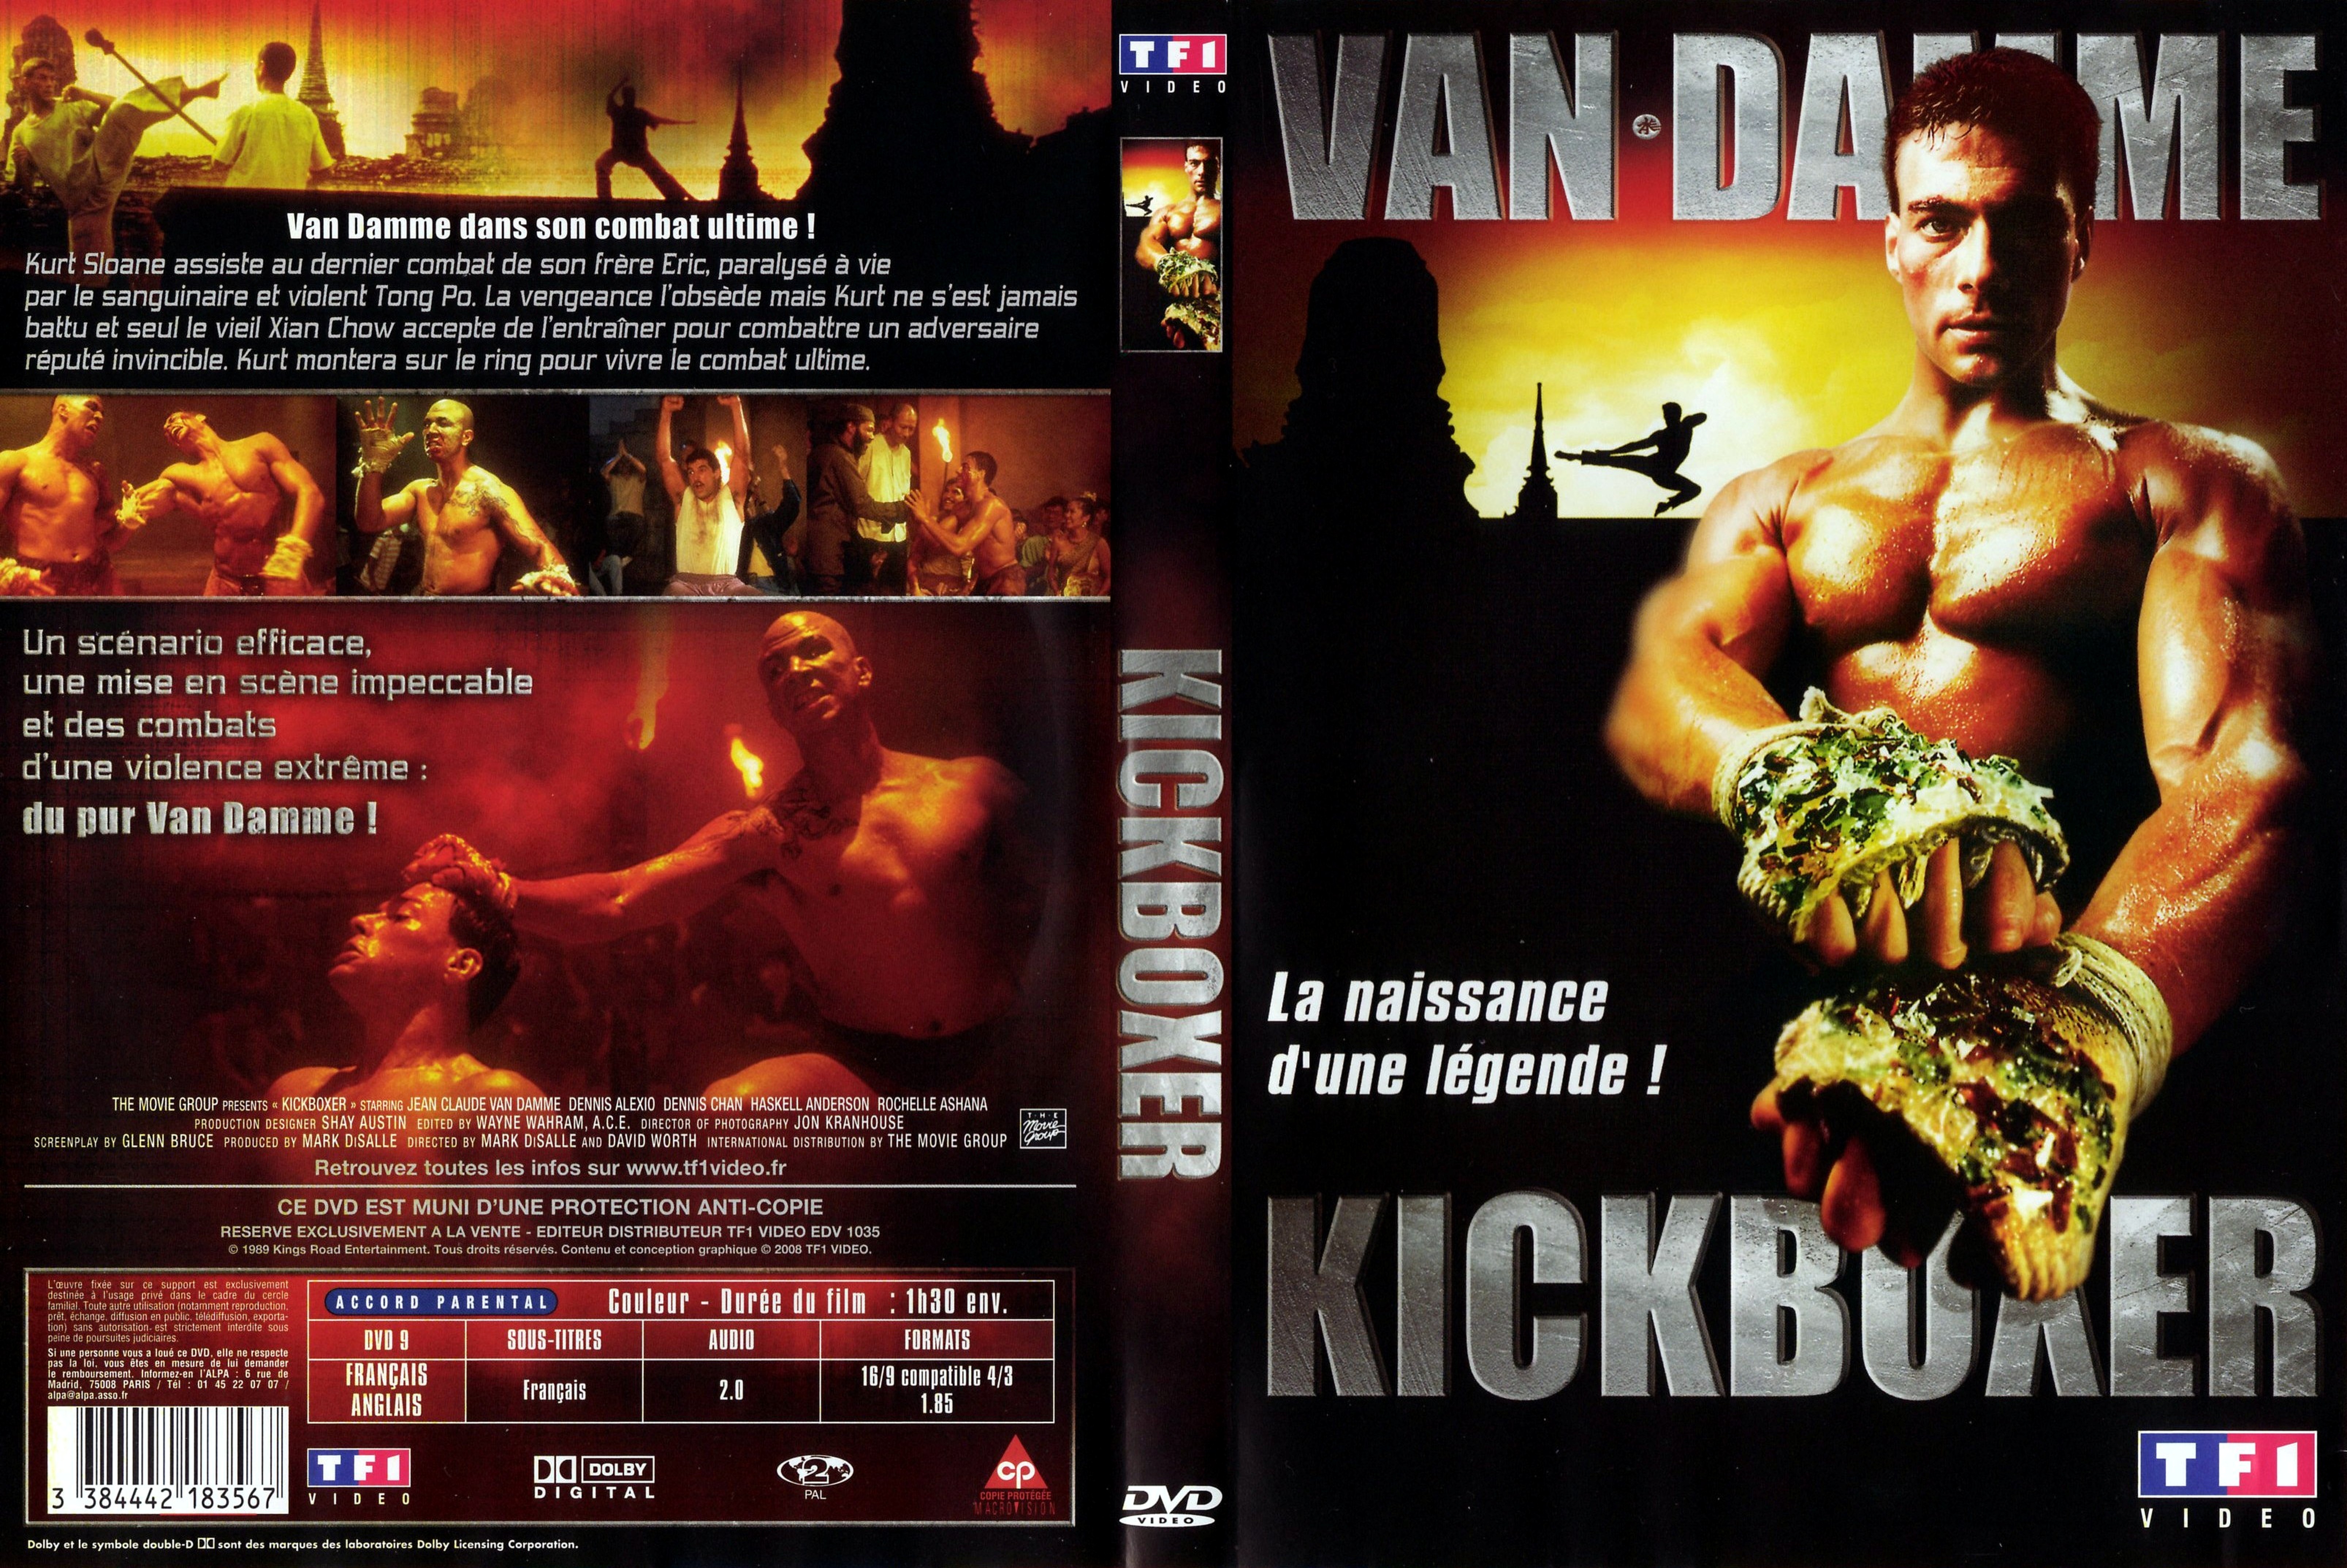 Jaquette DVD Kickboxer v2